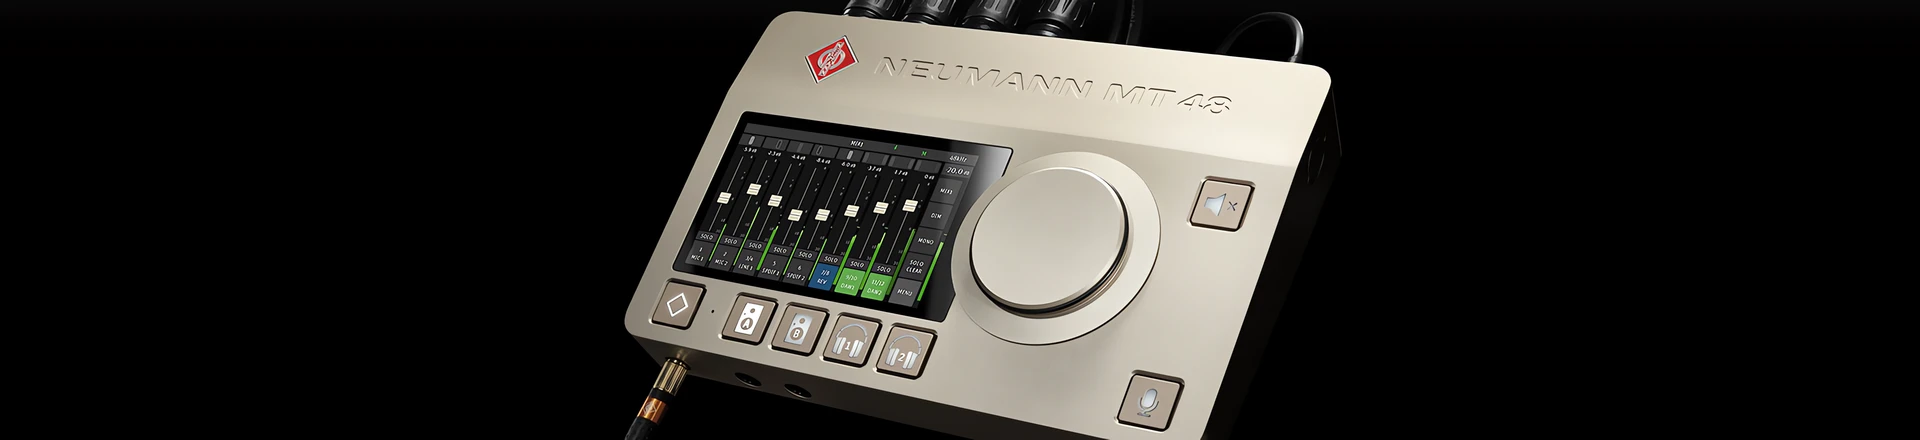 Pierwszy interfejs audio od Neumanna MT 48.